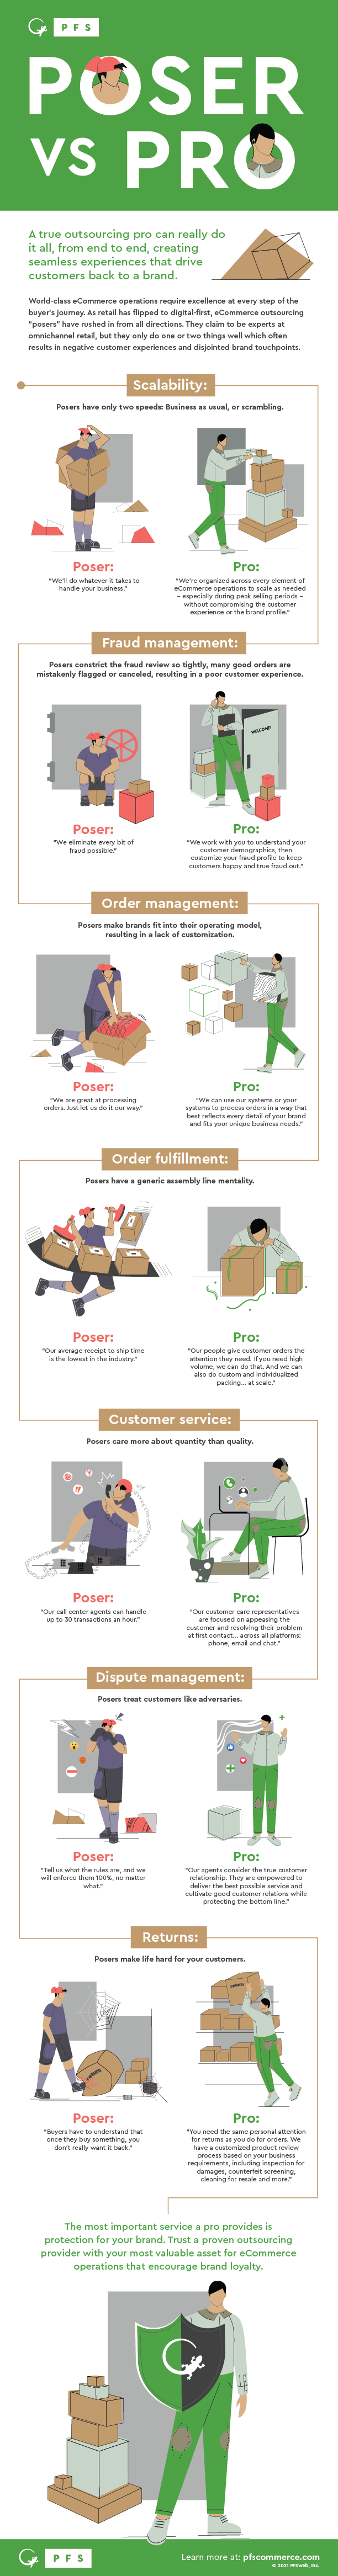 eCommerce BPO Poser vs. Pro Infographic